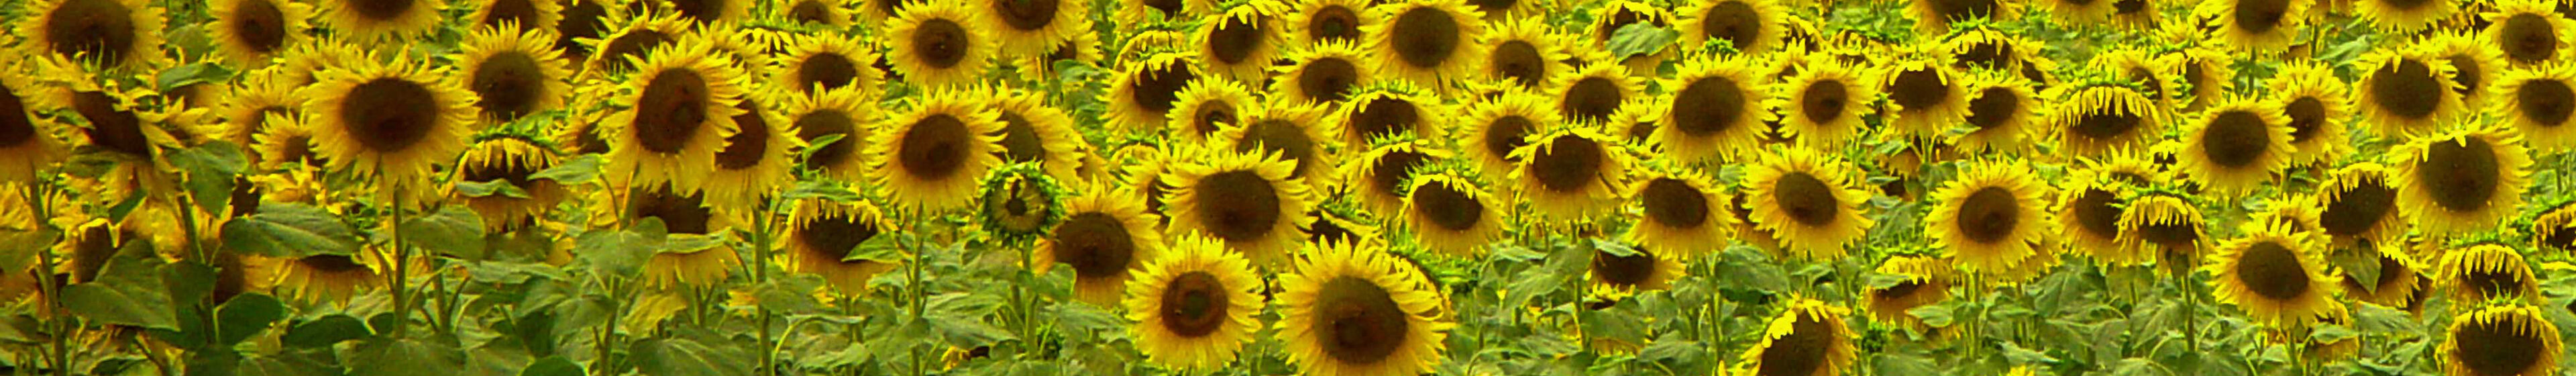 Kopfbild_Sonnenblumen